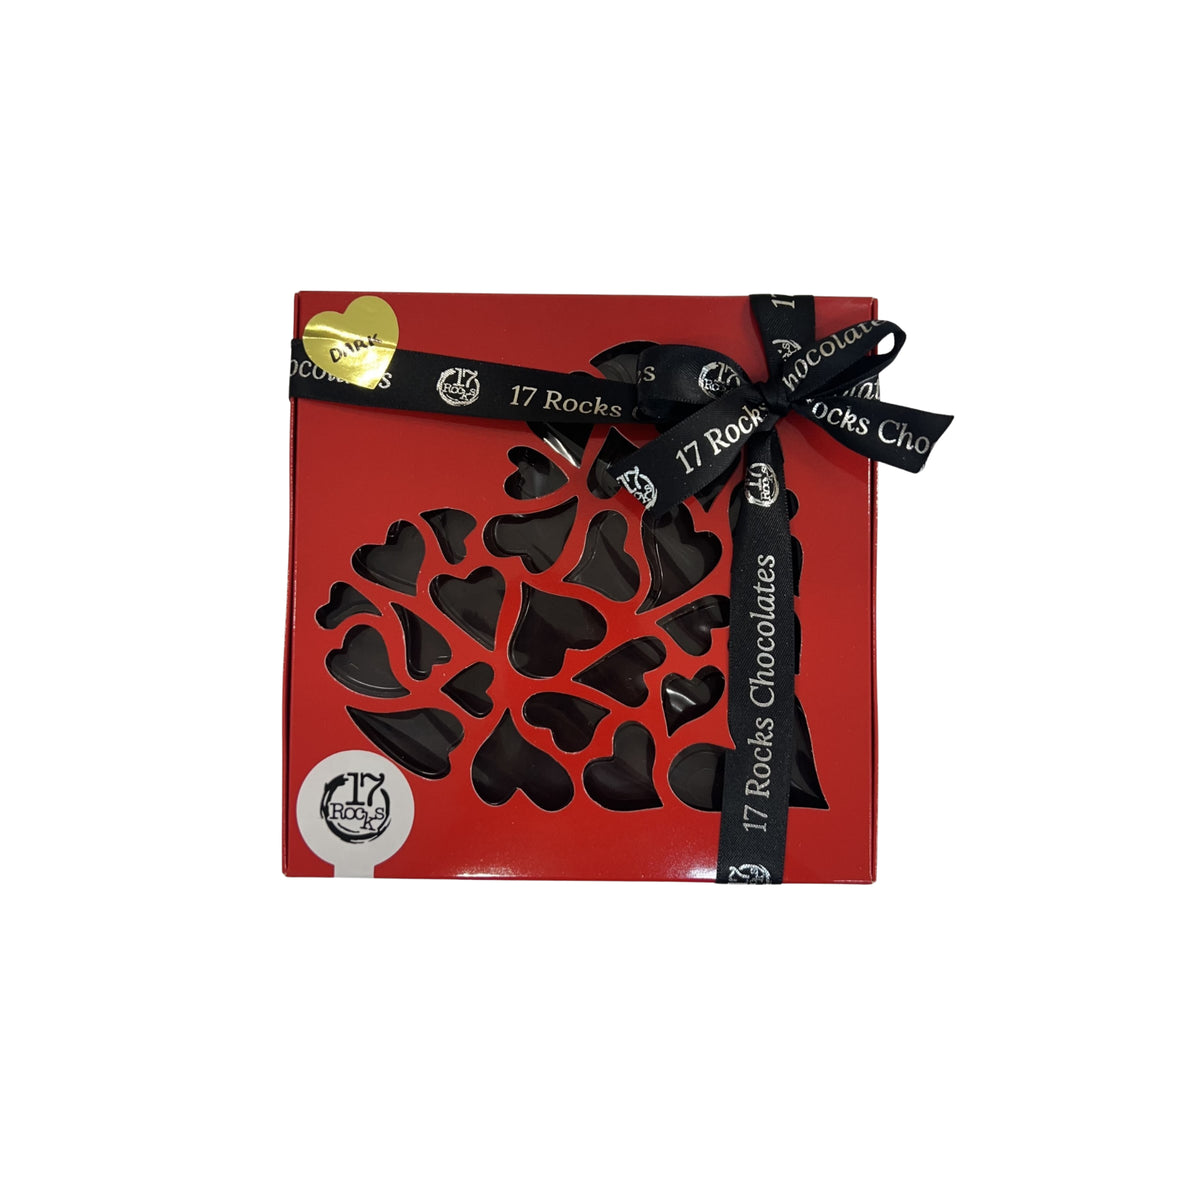 Dark Chocolate Love heart shaped gift box